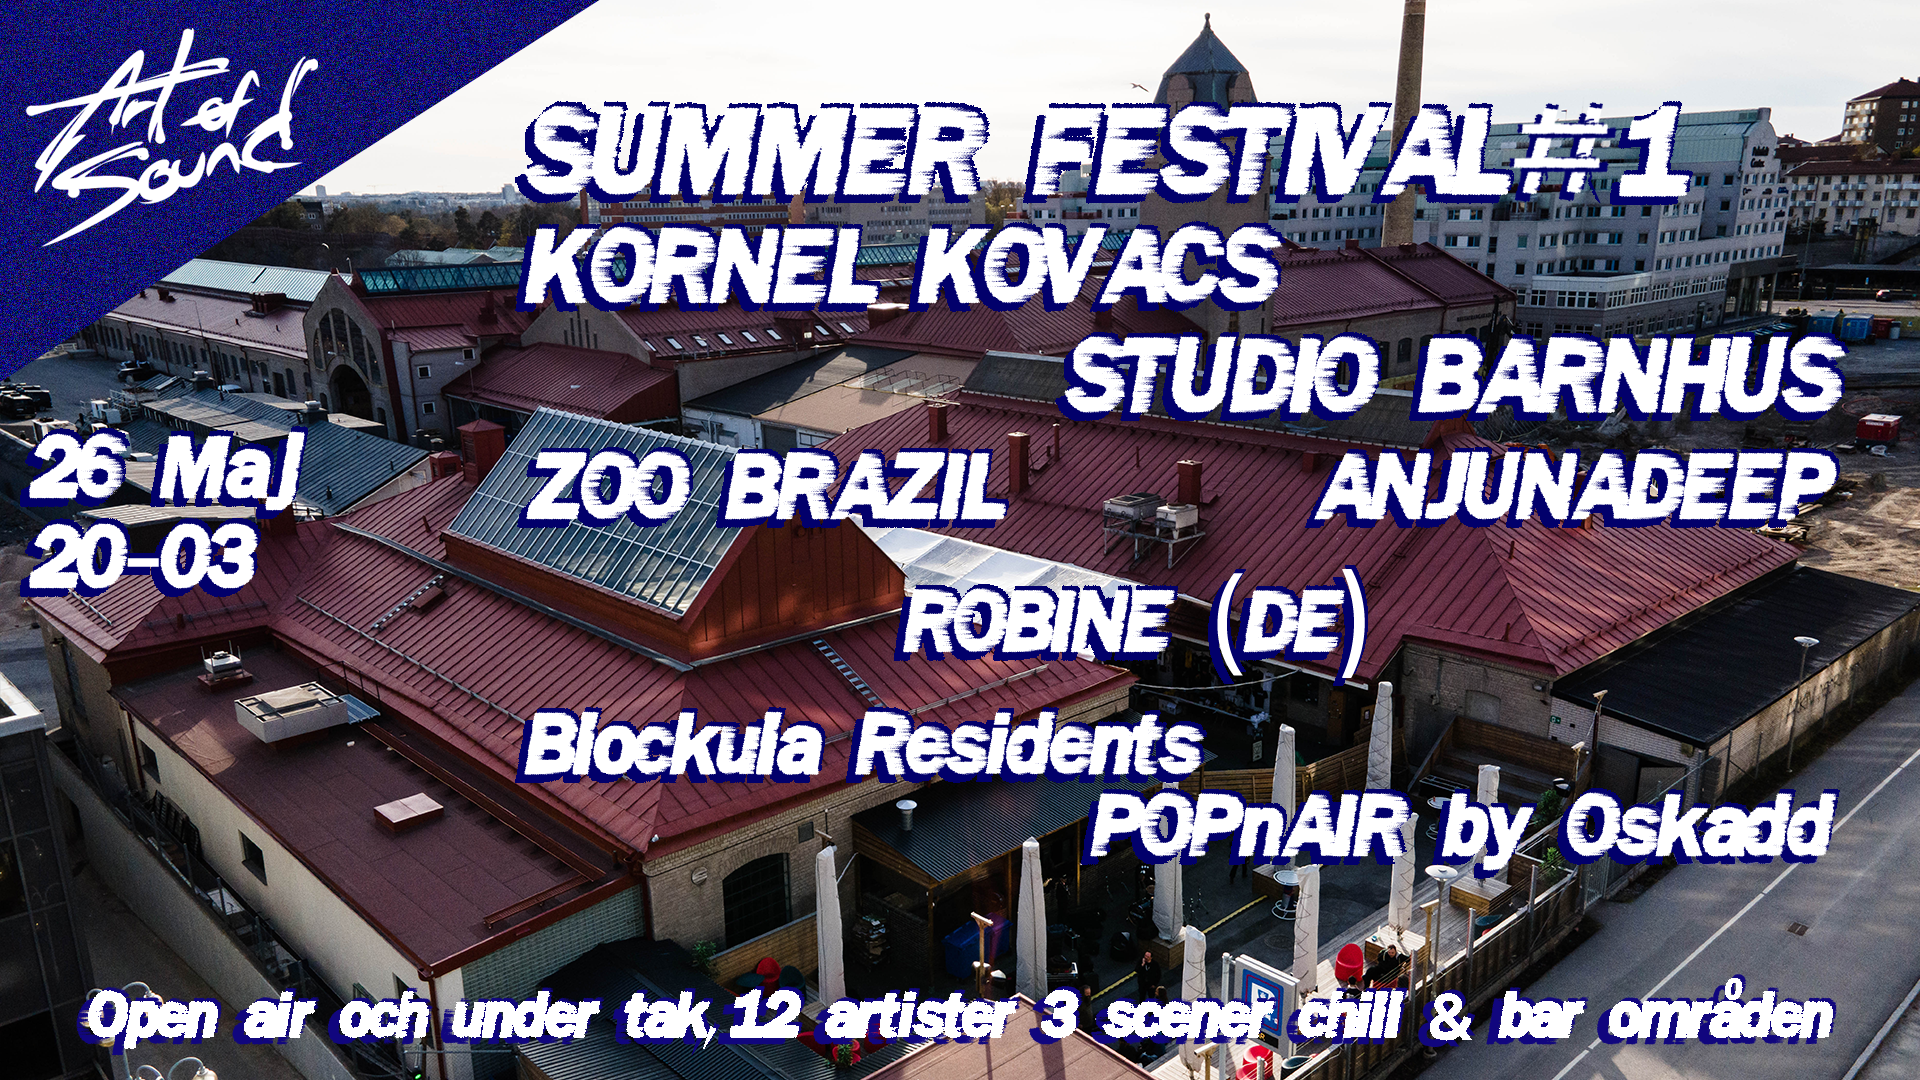 Art of Sound summer festival #1 - Página frontal